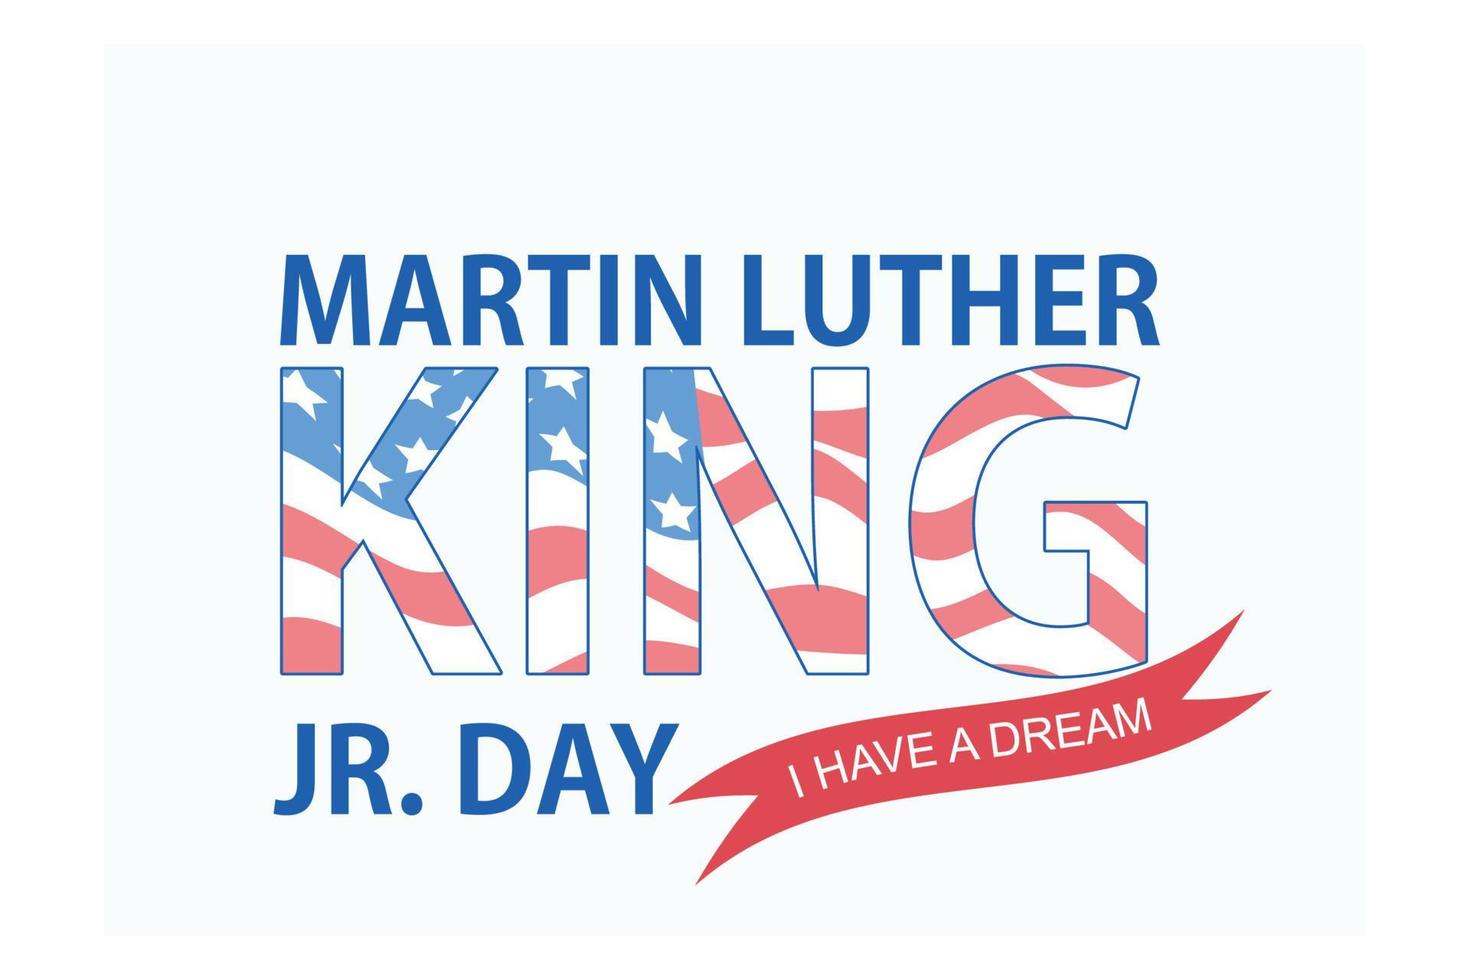 tarjeta de felicitación del día de martin luther king, tipografía con estrellas sobre fondo azul oscuro, ilustración moderna de vector plano